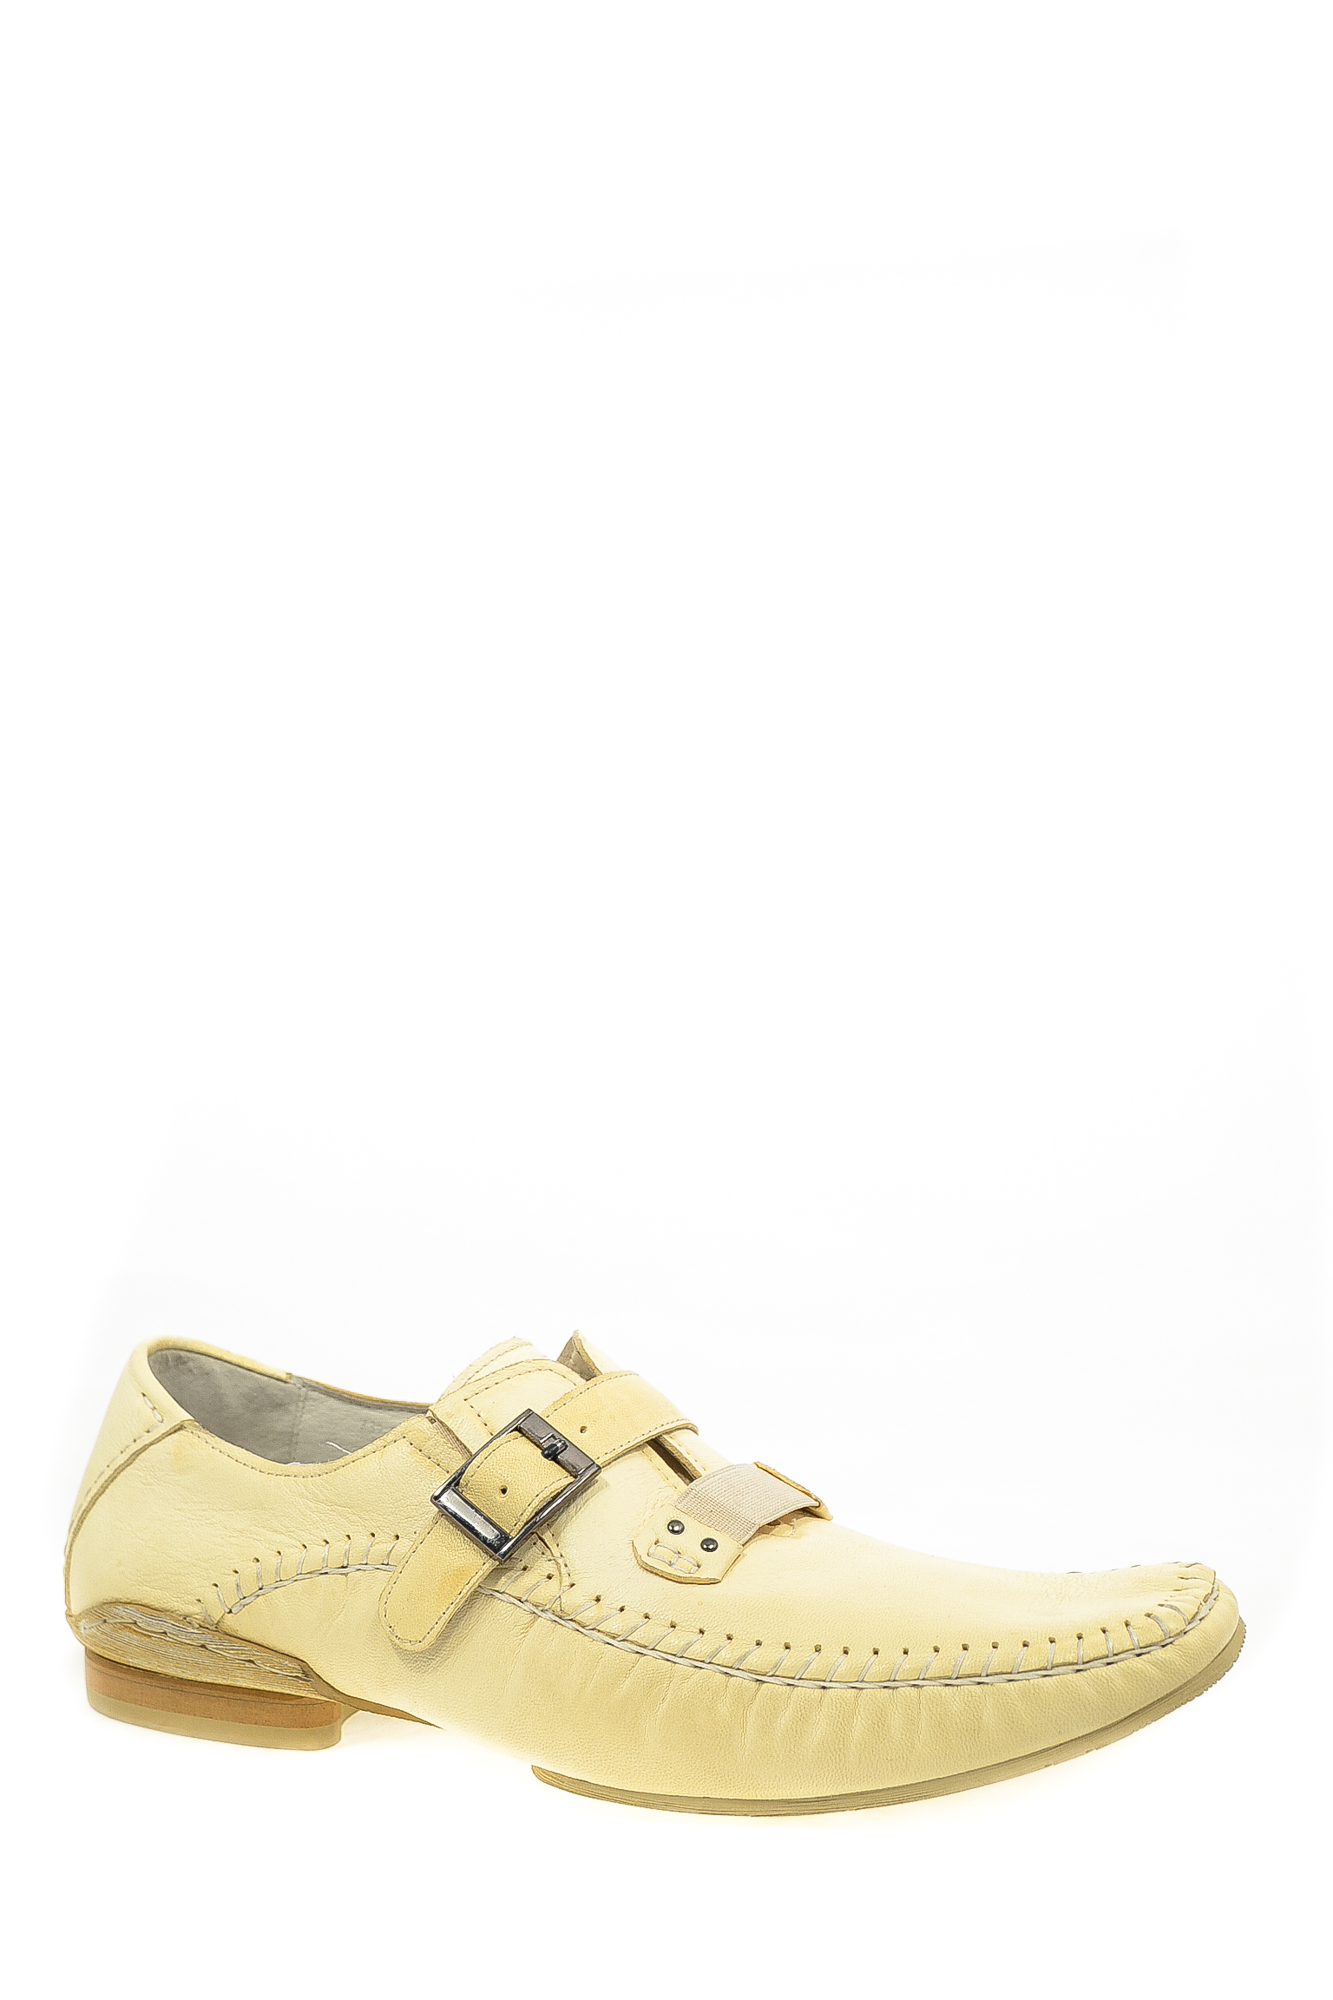 Туфли искусственная кожа ABB СР Magnus Shoes 493-03-1008 цвет желтый.